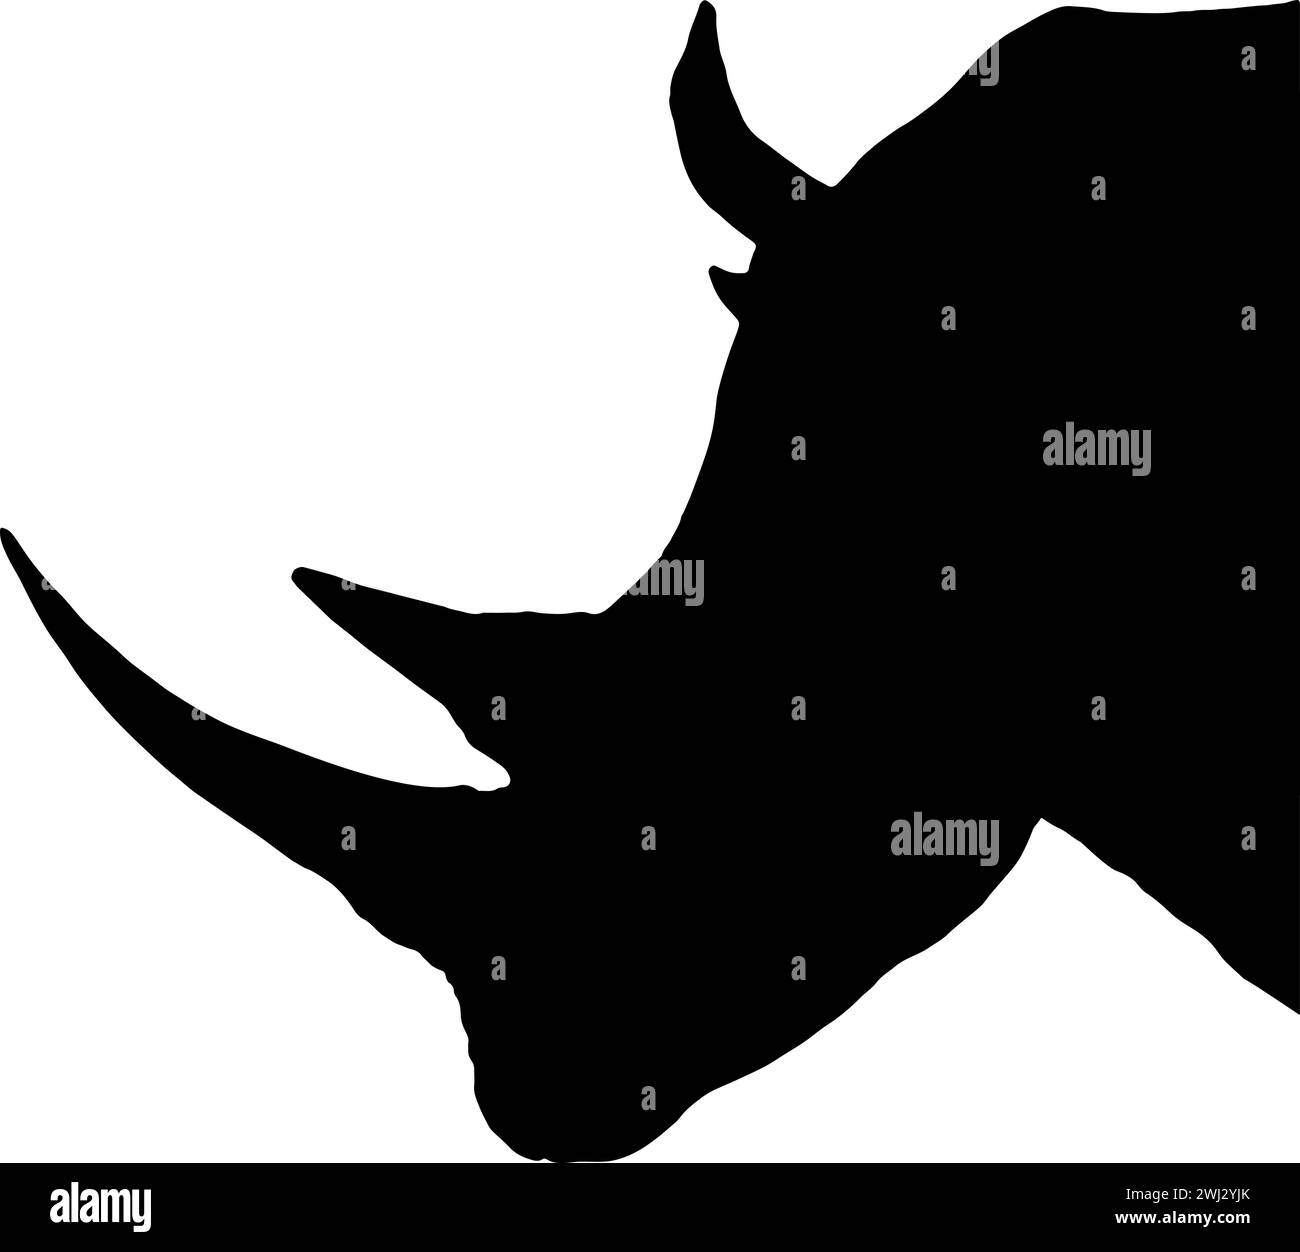 Schwarze Silhouette eines Rhinozeros-Kopfes, Profilansicht, isoliert Stock Vektor